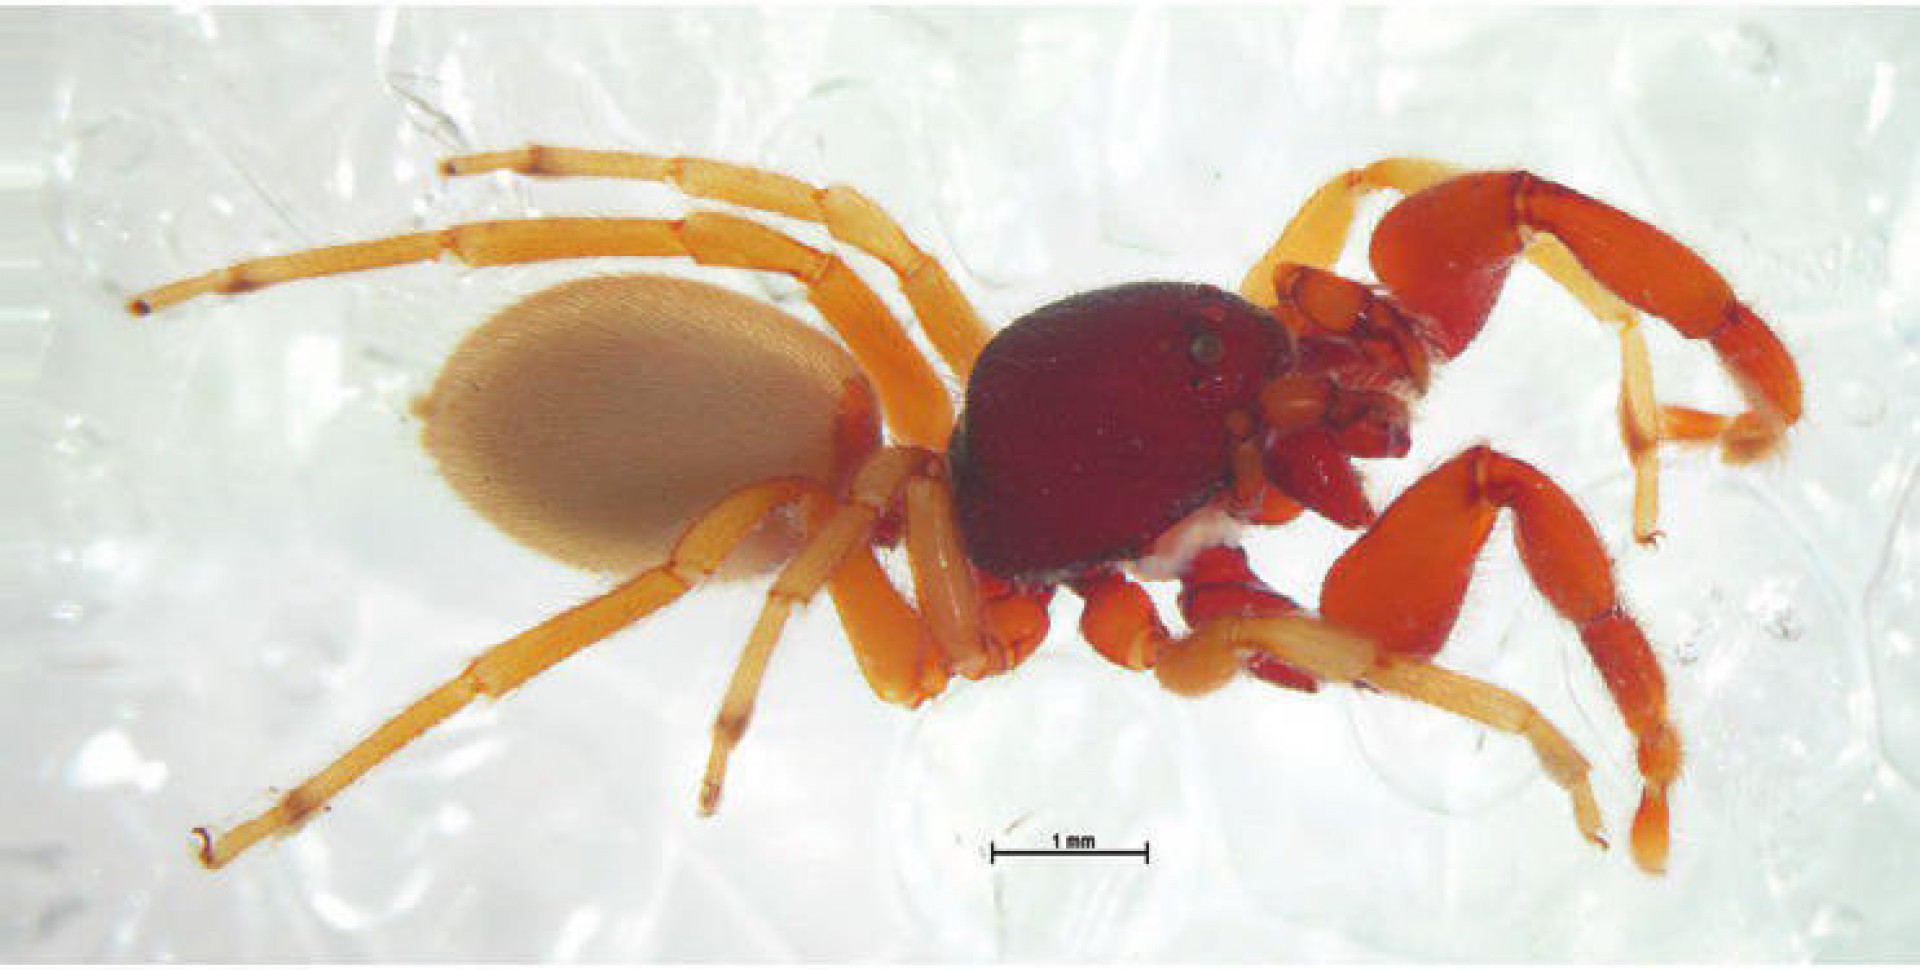 Espécime de aranha da família Palpimanidae. O nome científico dela é Sarascelis chaperi, encontrada em Israel, e descrita em 2013.(Foto: Sergei Zonstein ENTITY_amp_ENTITYYuri M. Marusik)